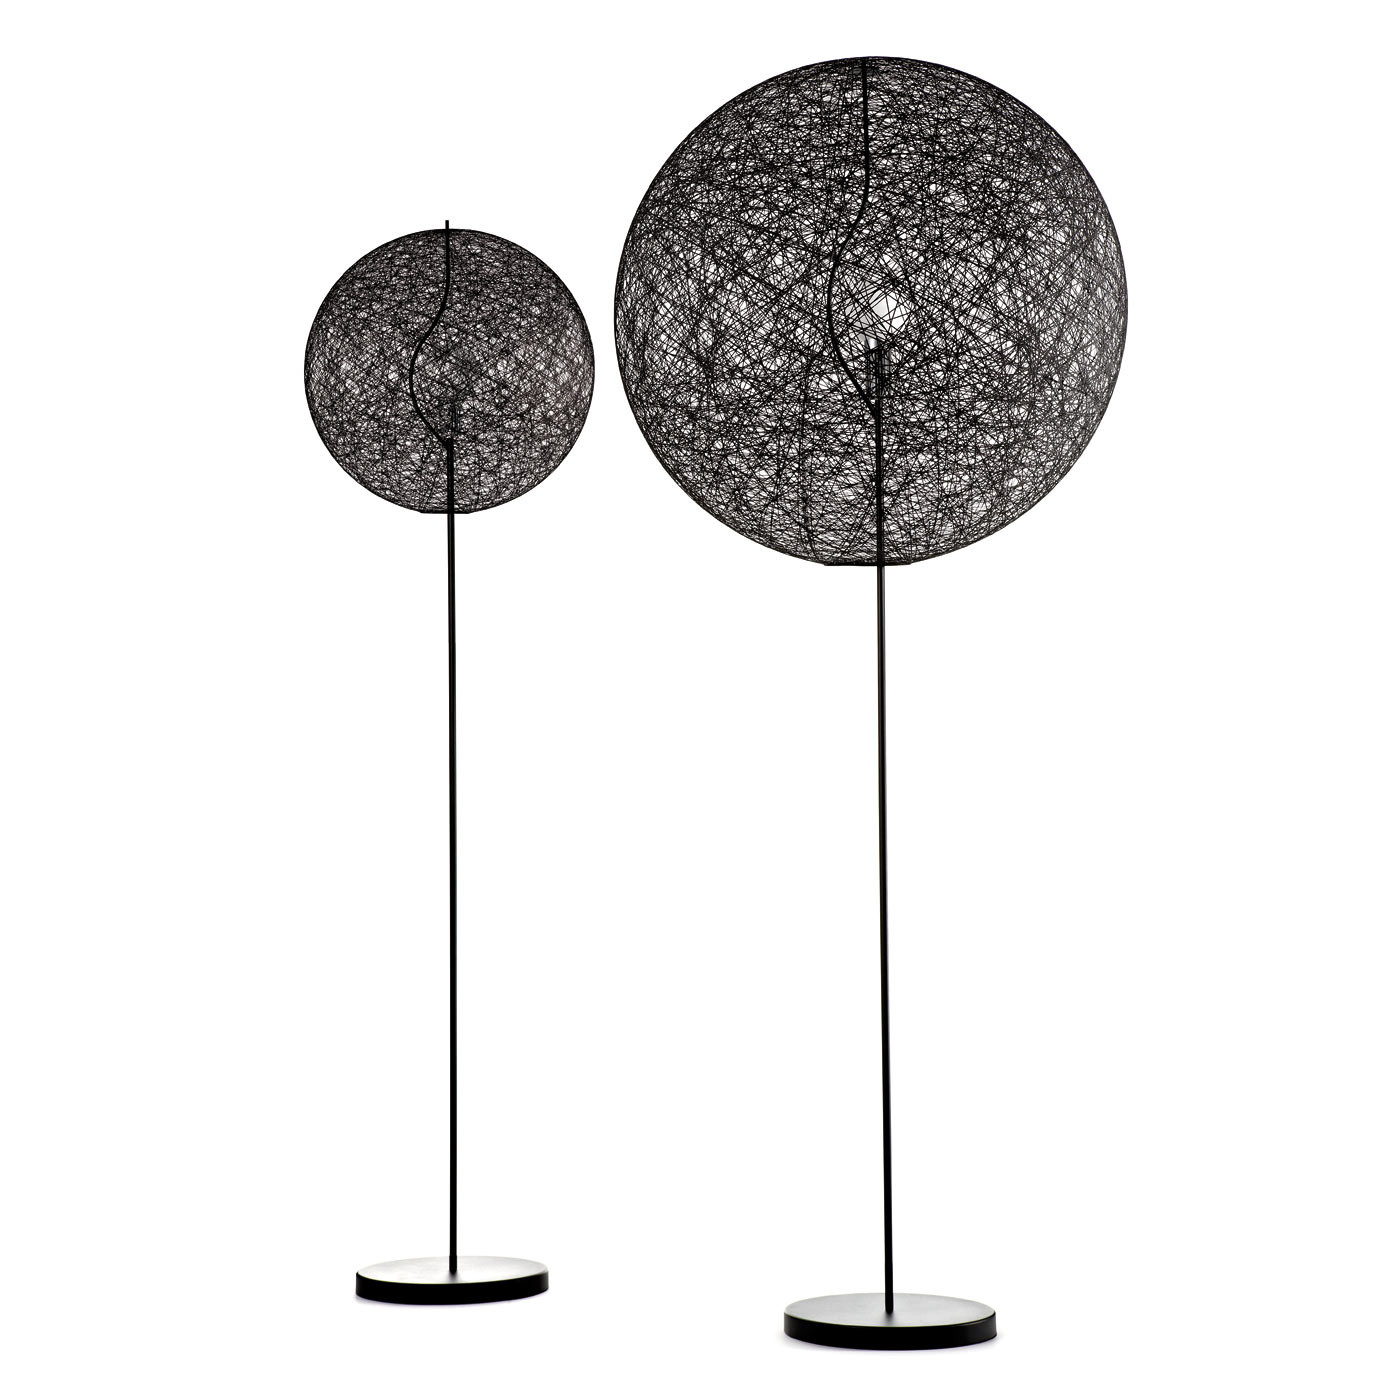 ② Moooi Random lampen 50 of 80 cm, Meerdere lampen beschikbaar — Lampes